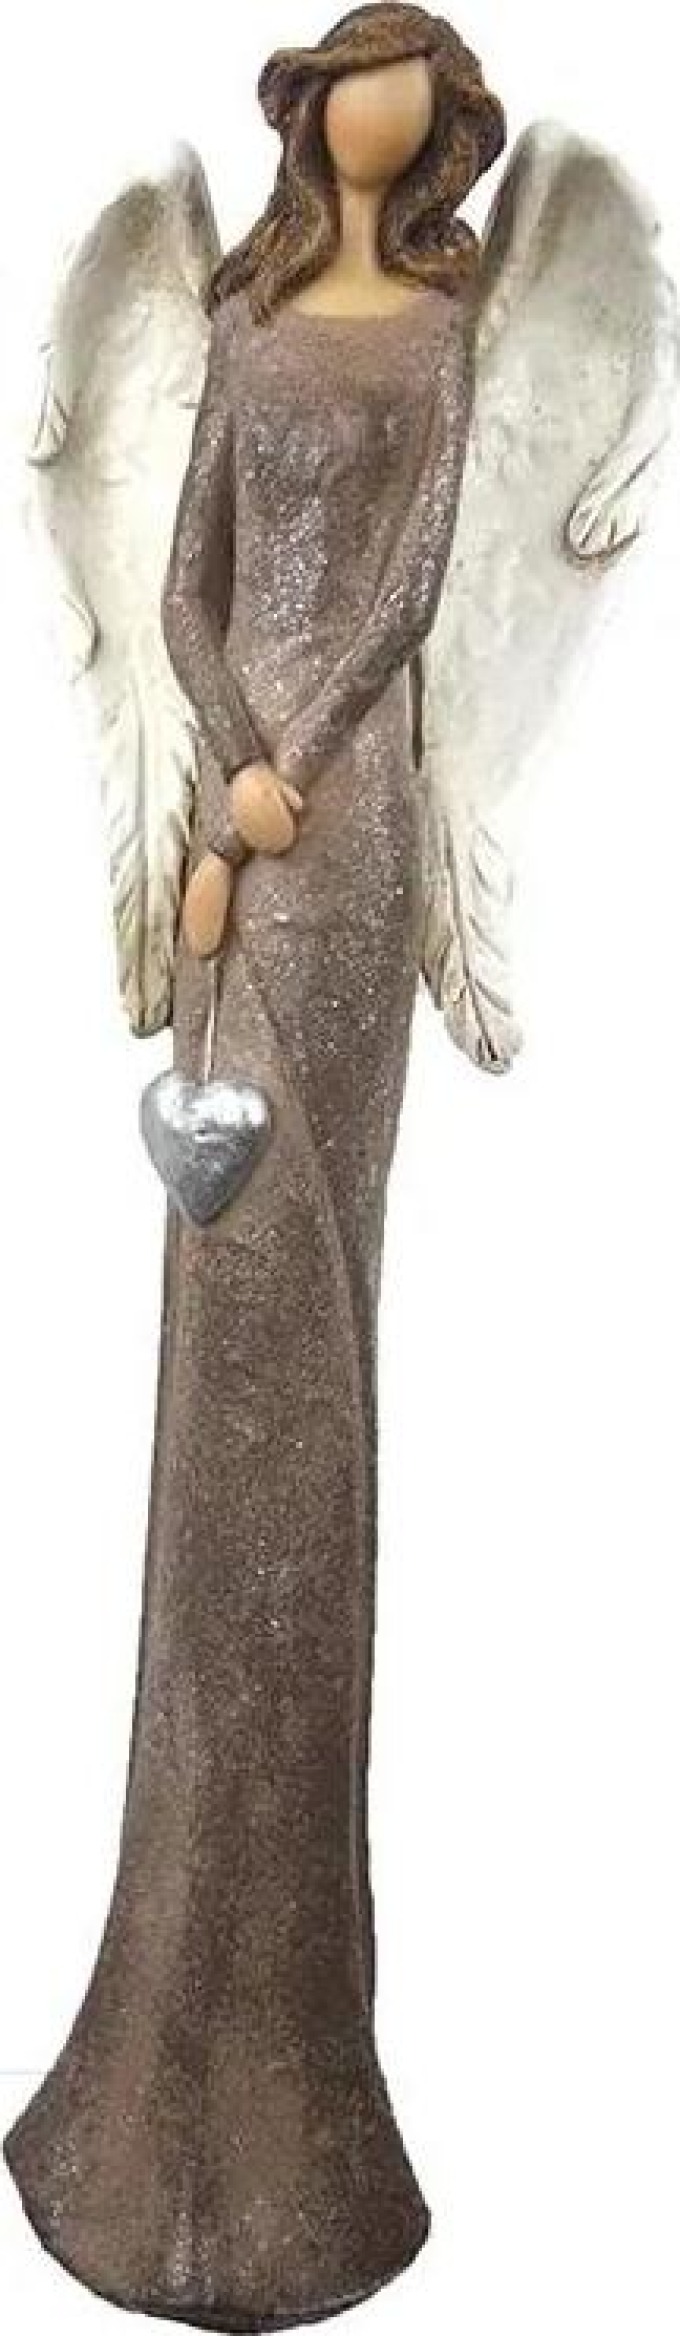 Soška anděla ve velikosti 40 cm s hnědým třpytivým vintage patinou